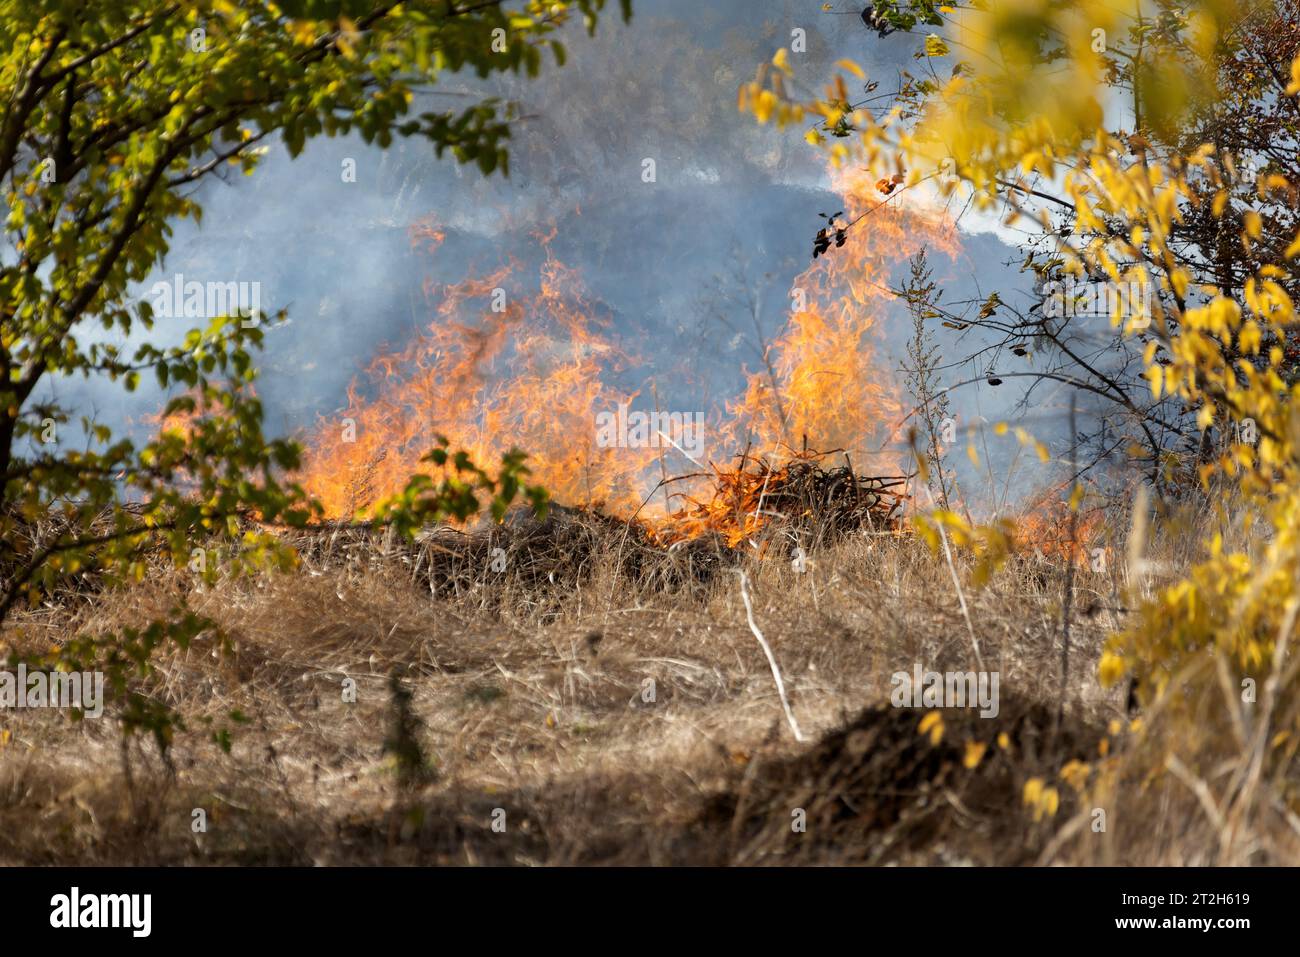 les feux de steppe pendant une sécheresse sévère détruisent complètement les champs. La catastrophe cause régulièrement des dommages à l'environnement et à l'économie de la région. Le feu menace Banque D'Images